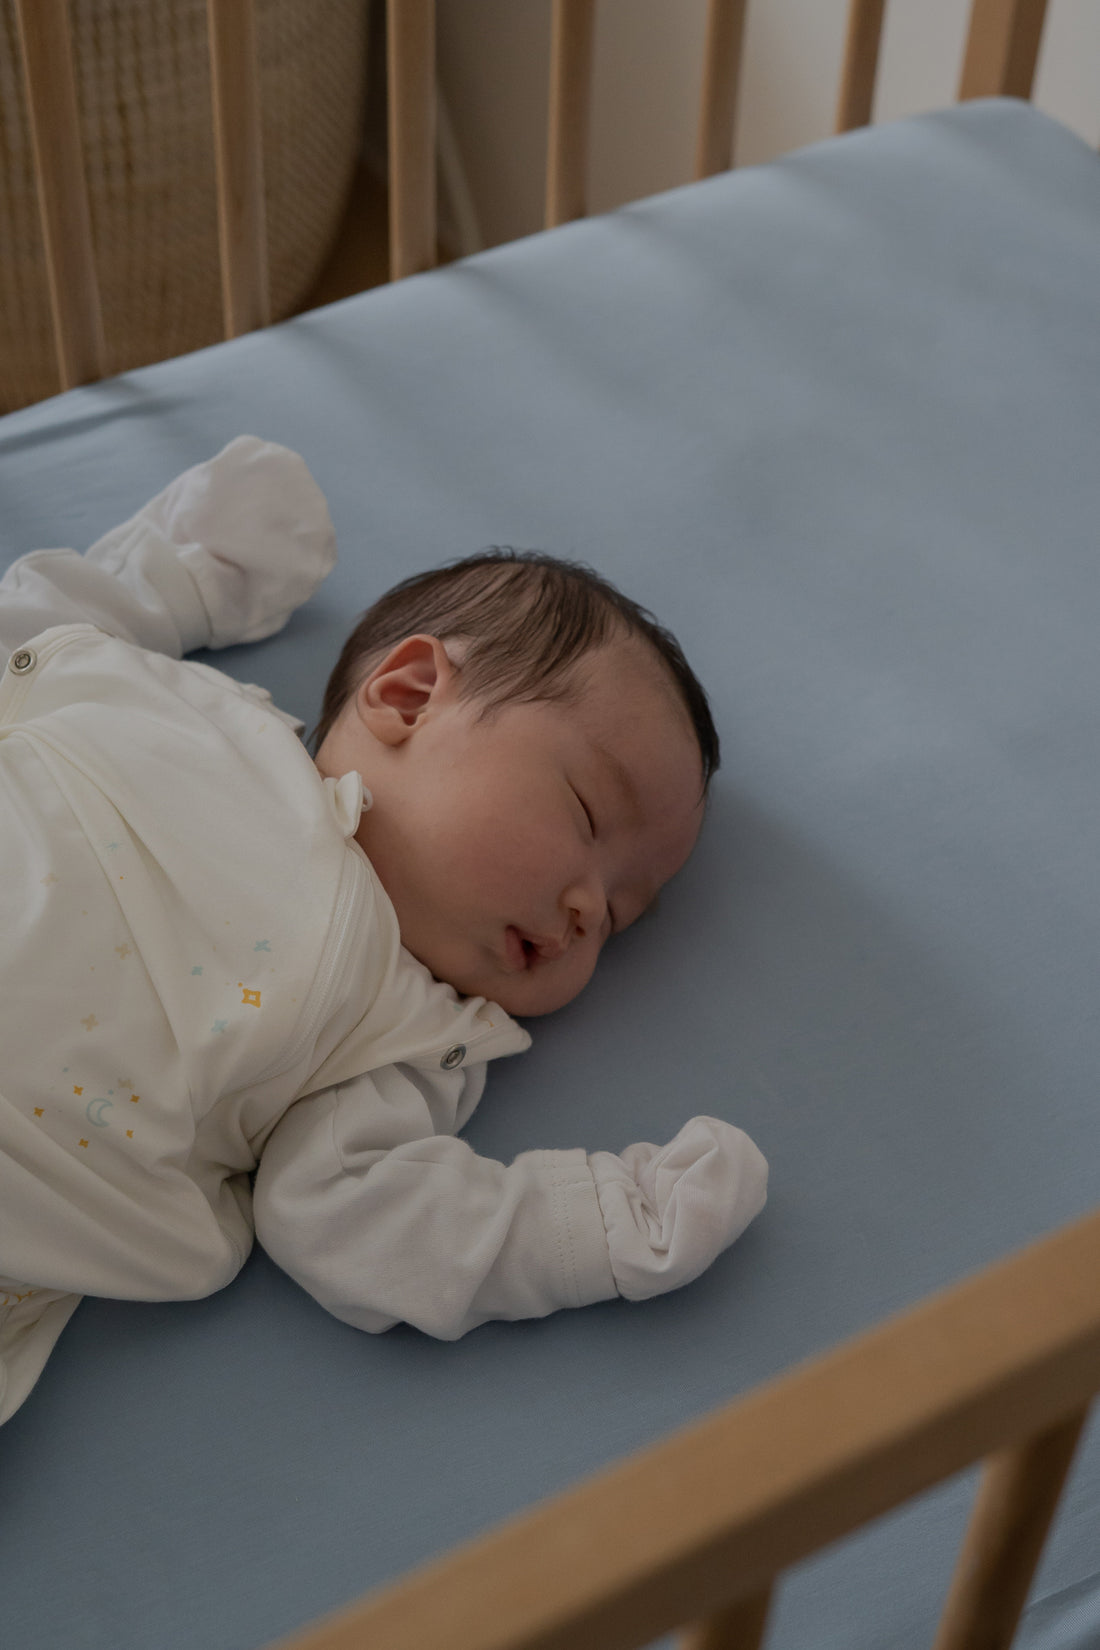 Newborn bedding guide, Read online